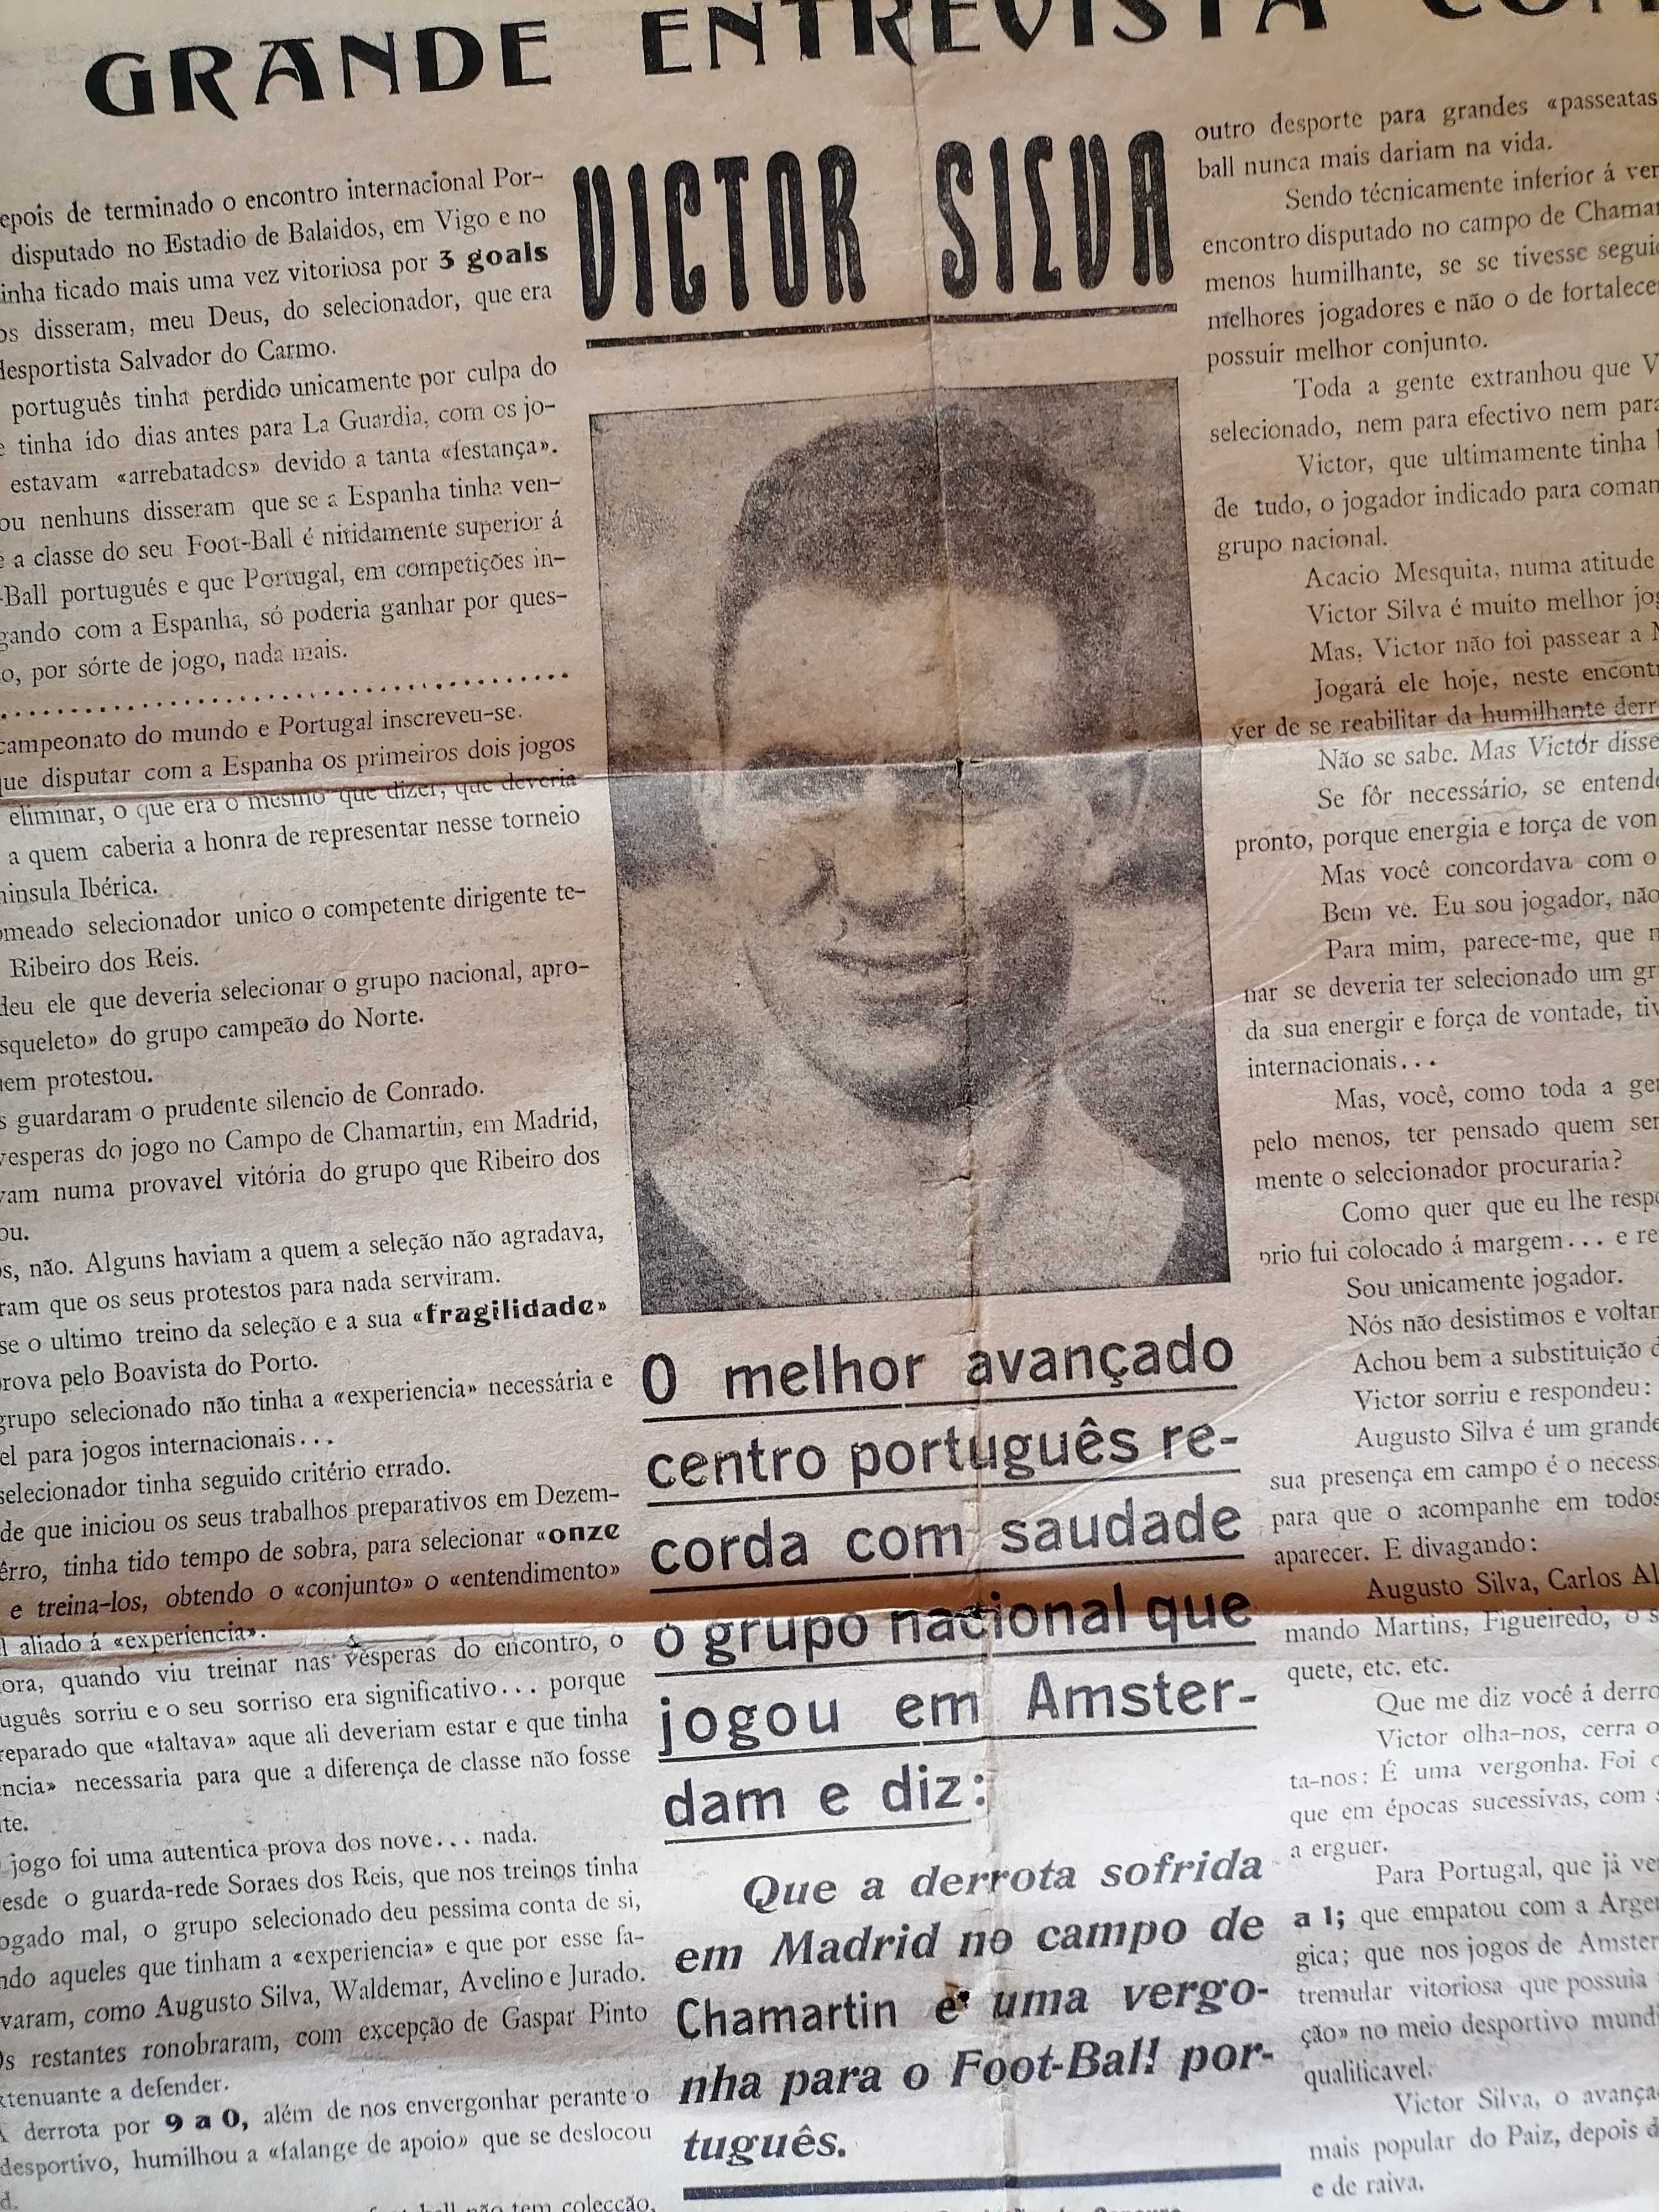 Vítor Silva/Benfica 1934 CARTA ABERTA aos Desportistas Portugueses